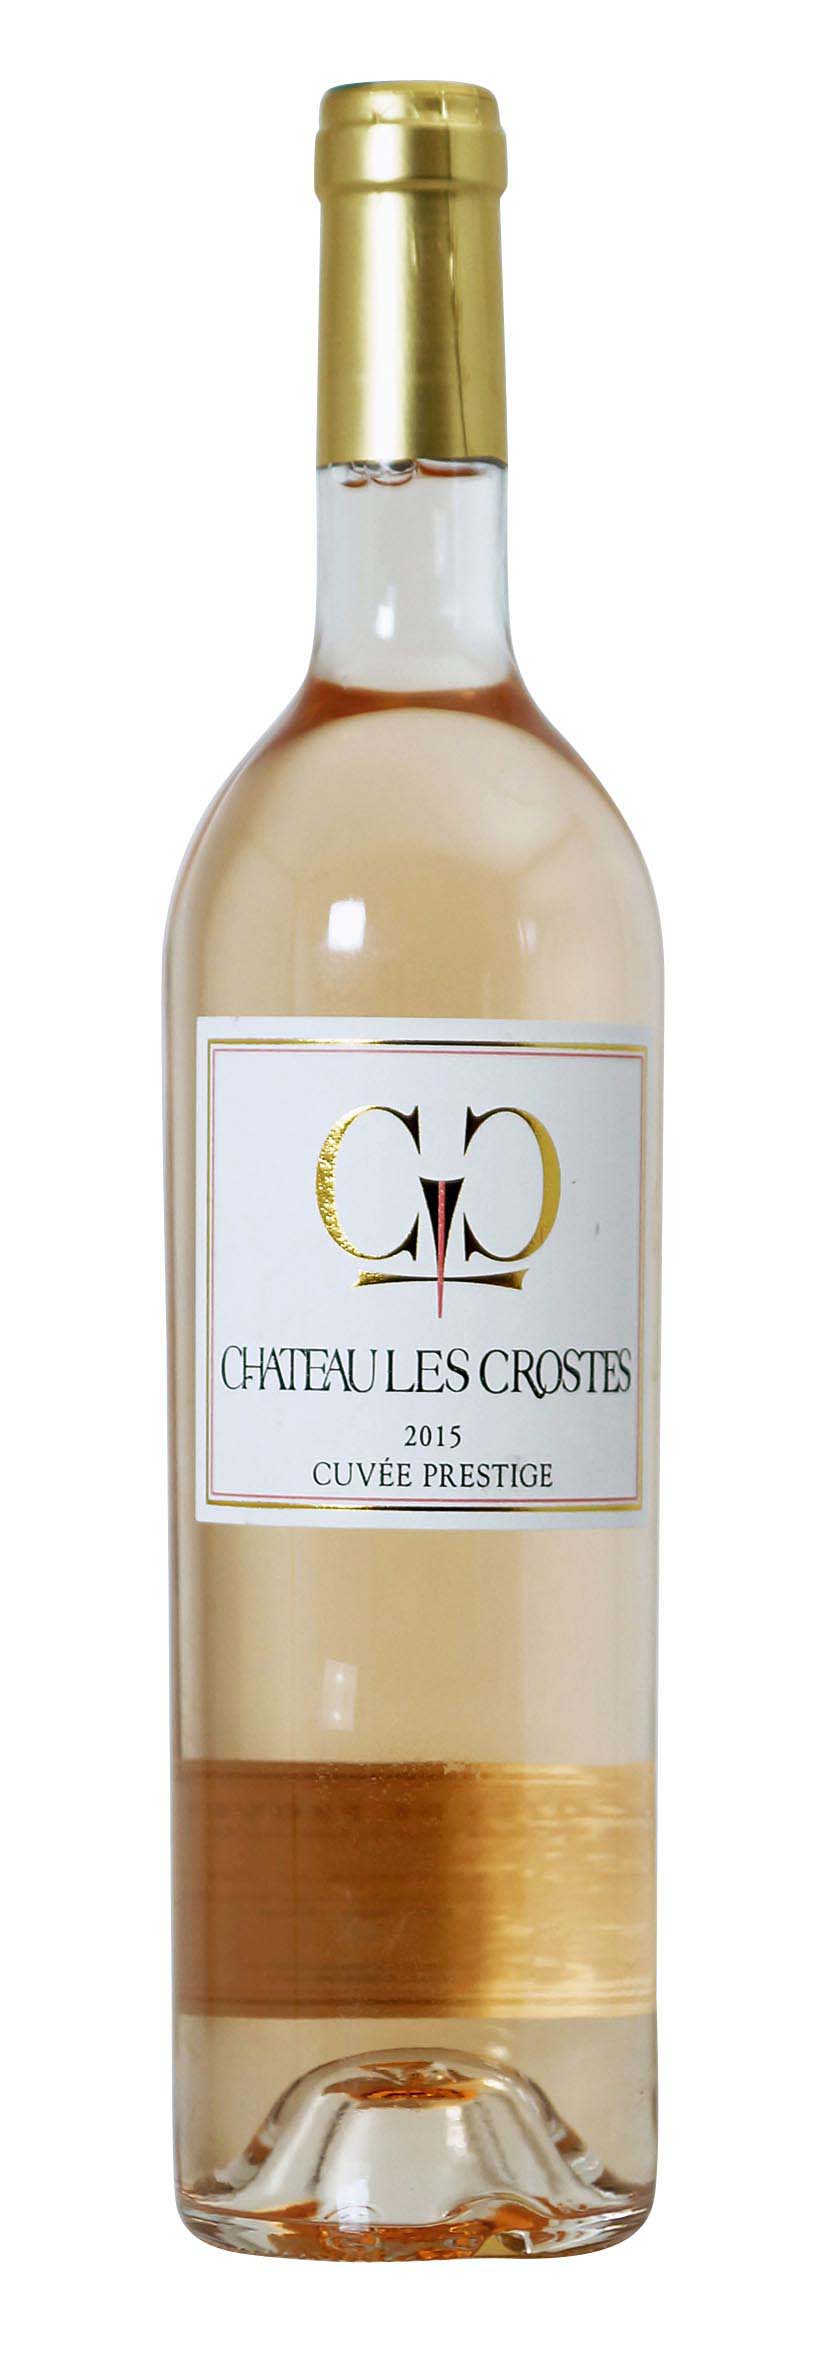 Côtes de Provence AOP Cuvée Prestige 2015